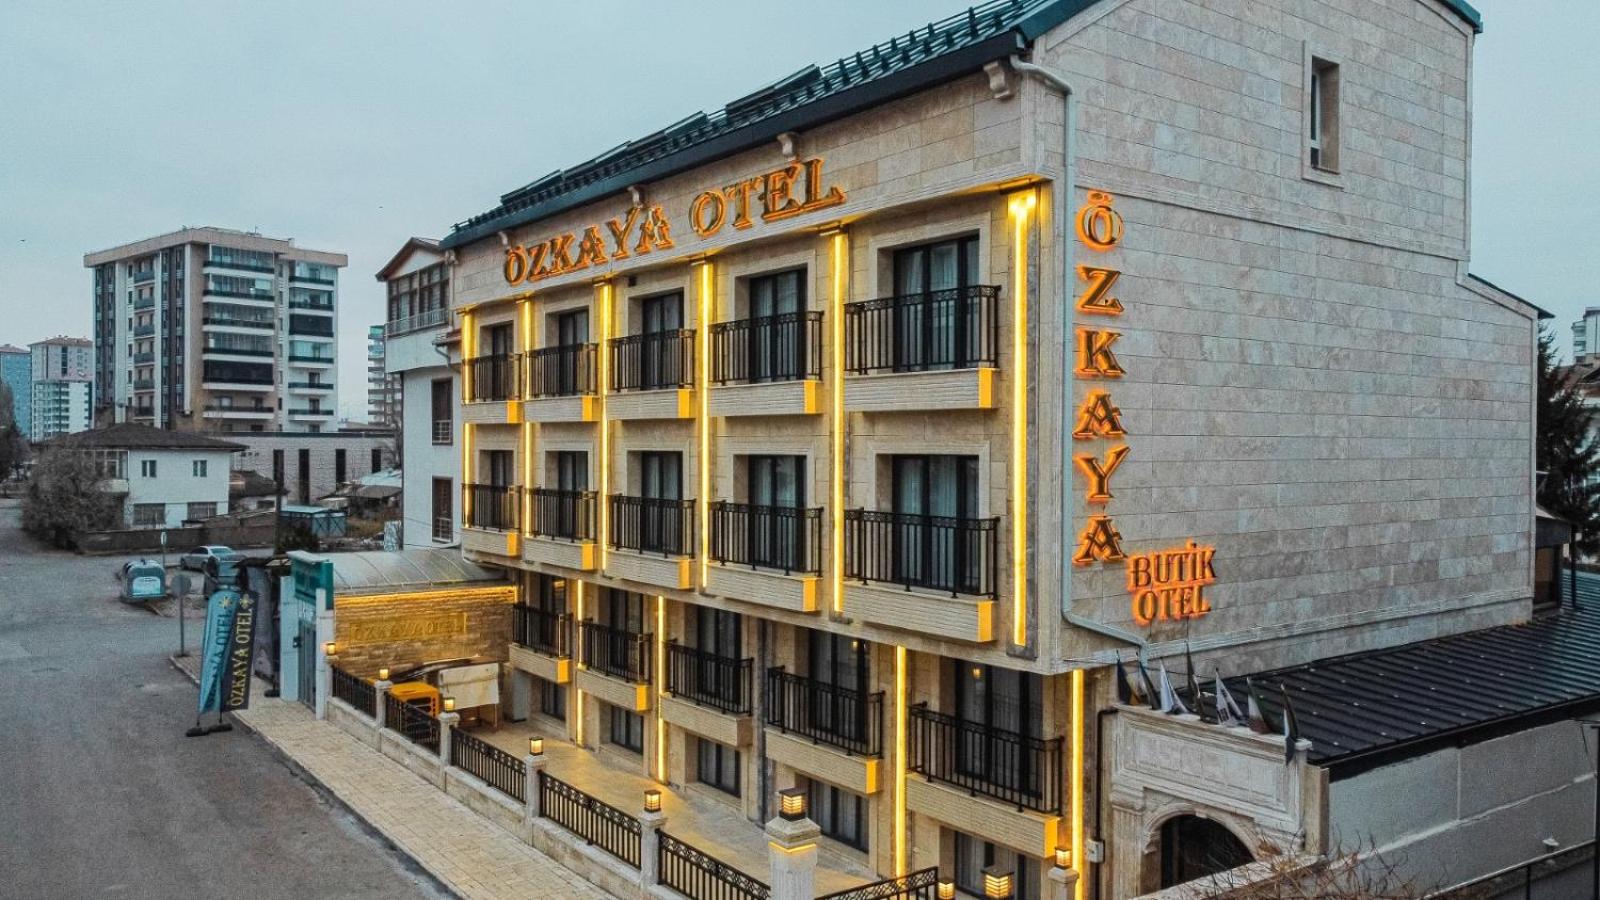 Sivas Ozkaya Otel